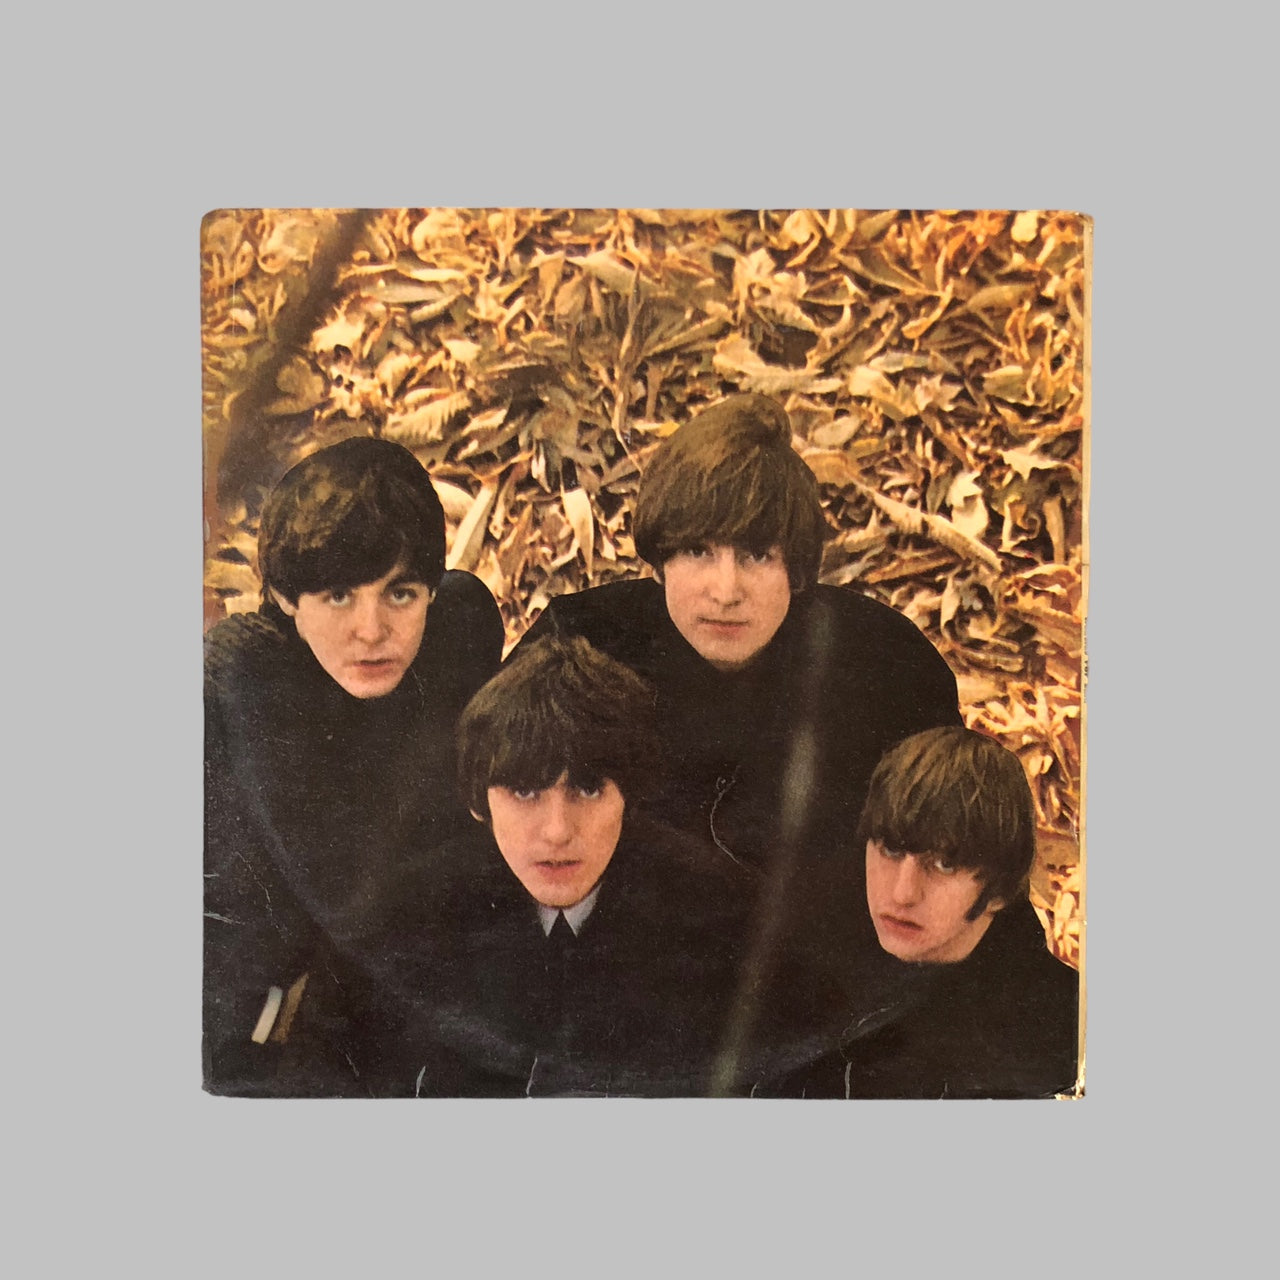 LP Vinyl - The Beatles - For Sale.